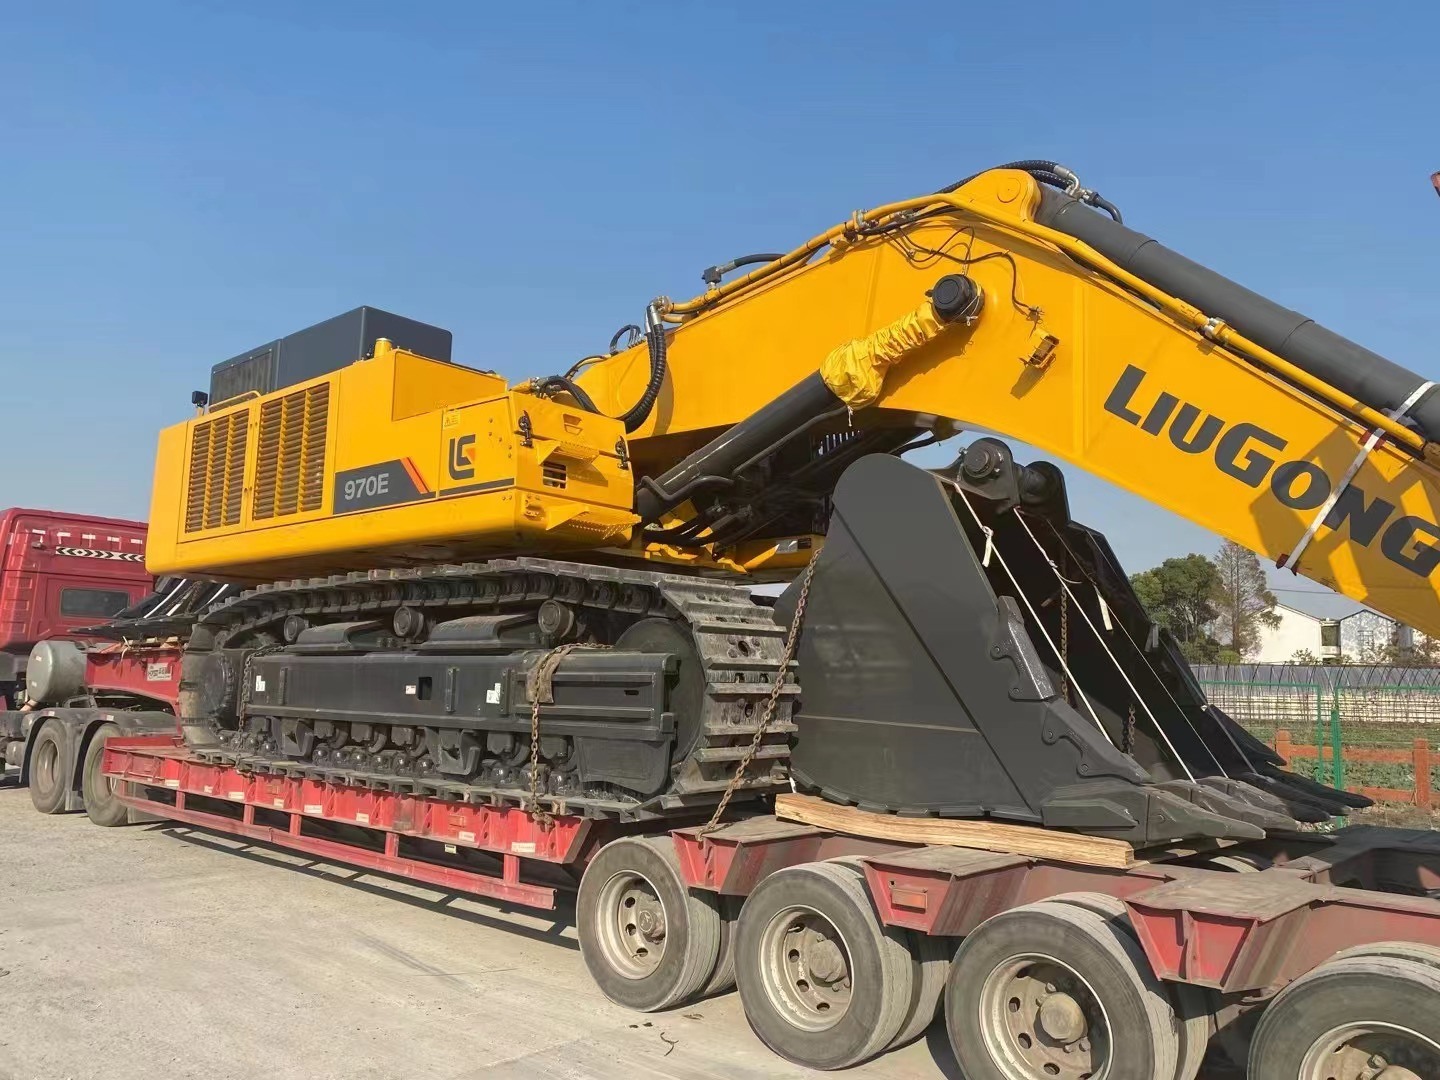 Liugong Clg970e 70 Ton Hydraulic Crawler Excavator for Quarry